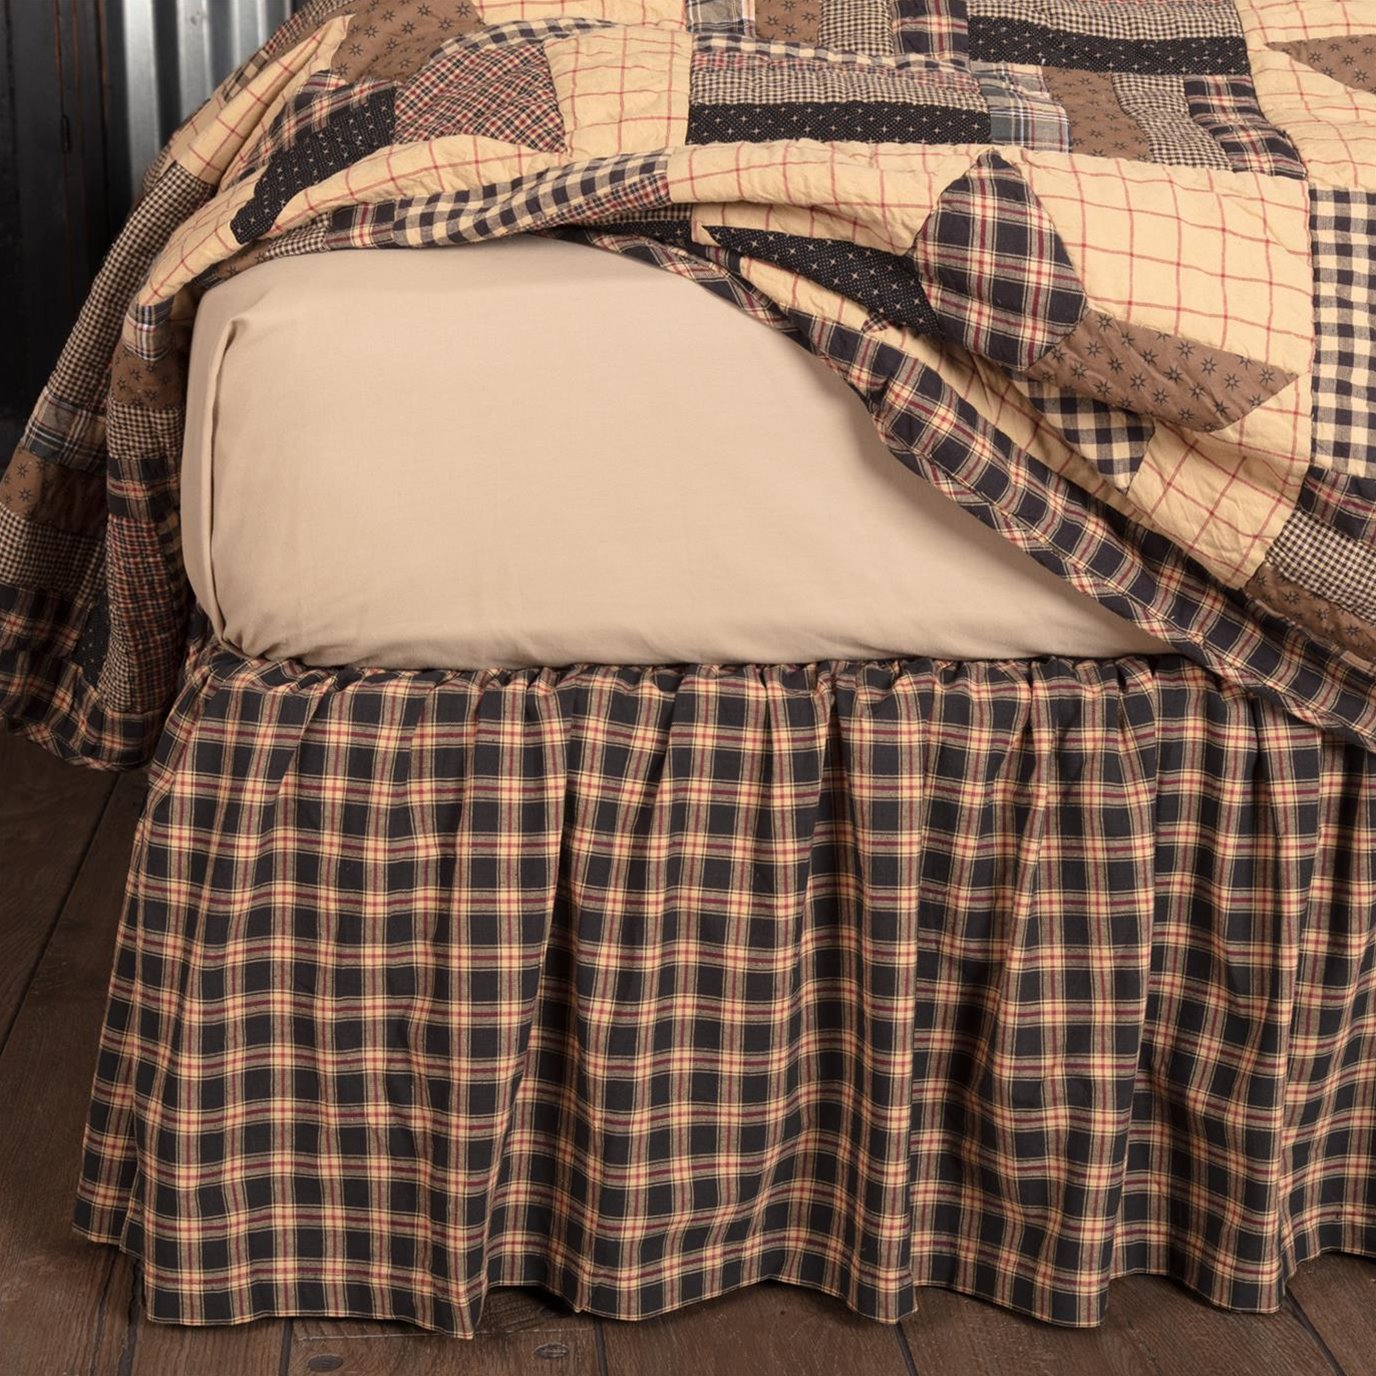 Bingham Star Queen Bed Skirt 60x80x16